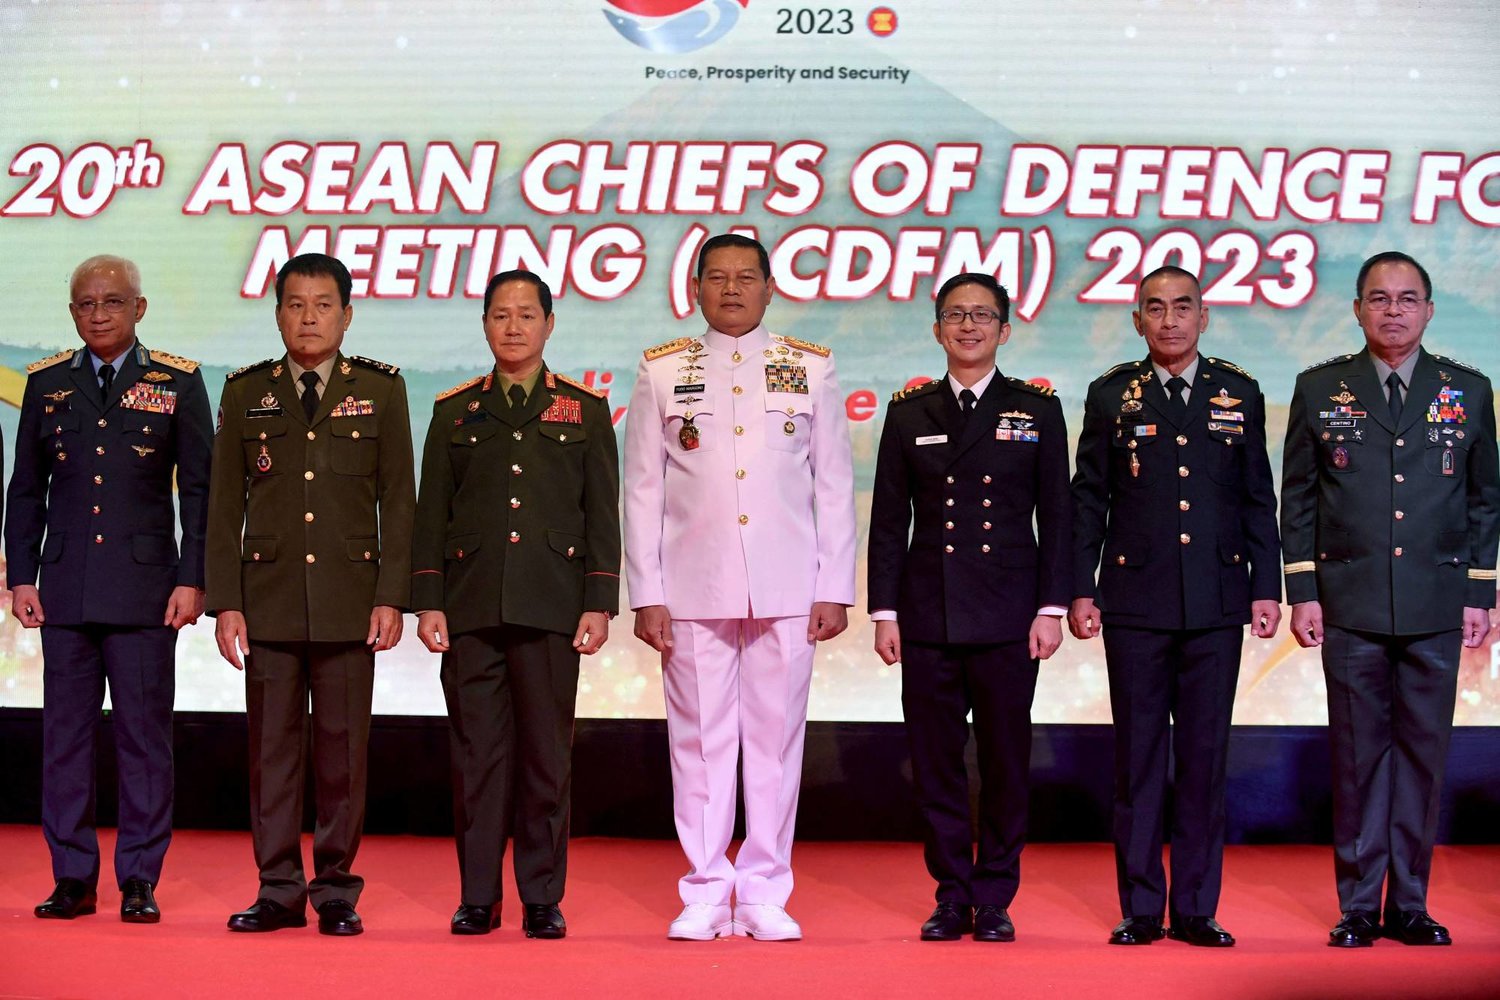 قائد الجيش الإندونيسي يودو مارغونو (وسط) يلتقط صورة خلال اجتماع مع مسؤولي الدفاع في رابطة آسيان في بالي بإندونيسيا في 7 يونيو 2023 (أ.ف.ب)